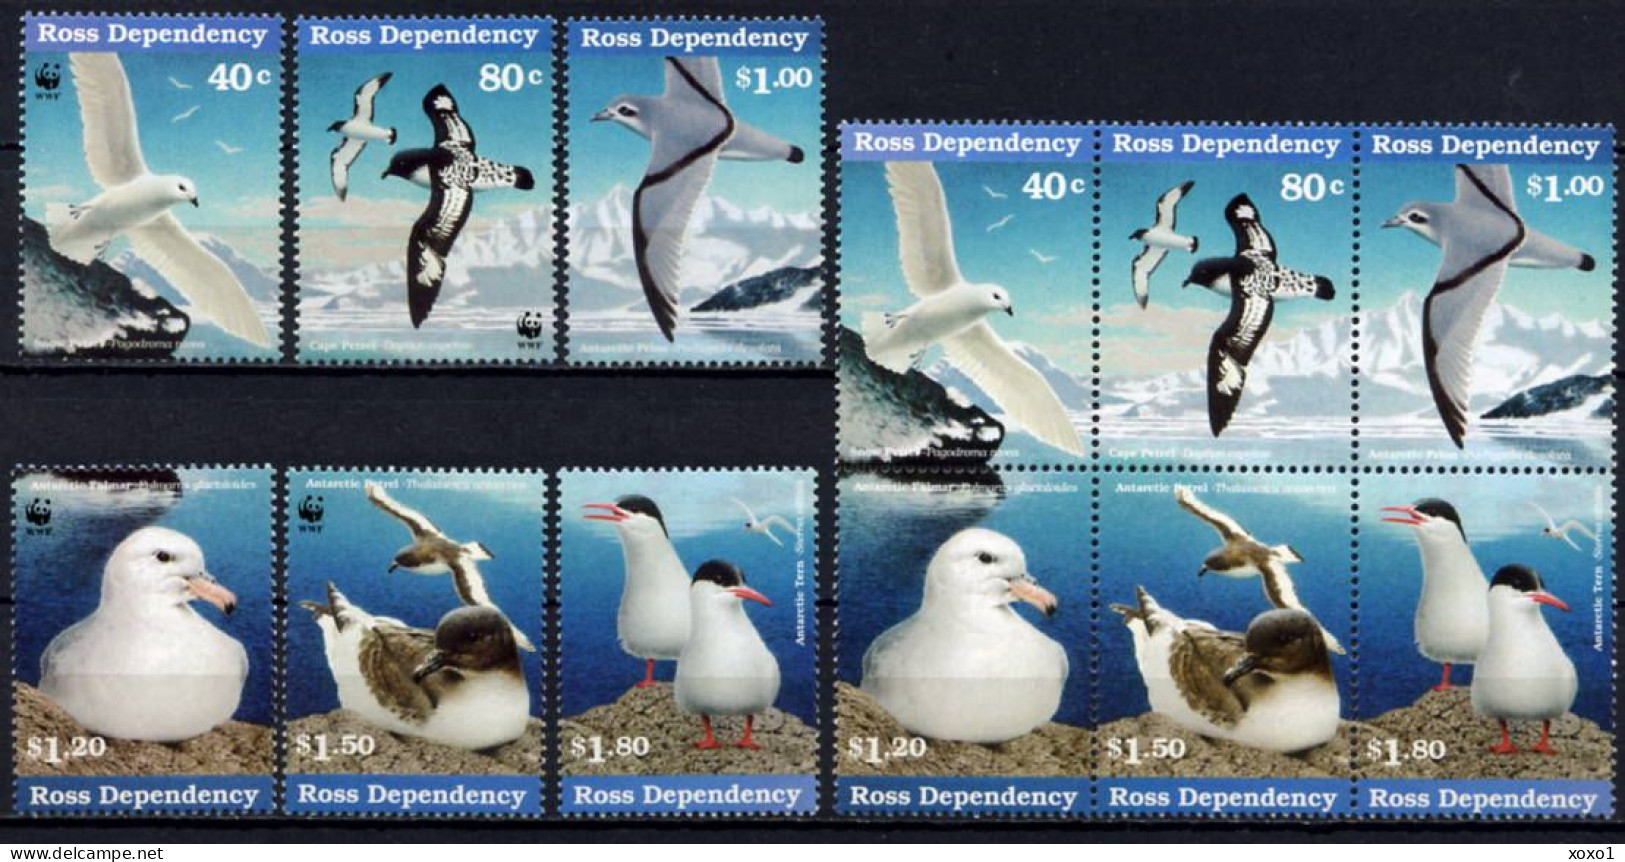 Ross 1997 New Zealand MiNr. 44 - 53  Neuseeland Ross-Gebiet WWF BIRDS 12v MNH** 53,00 € - Ungebraucht